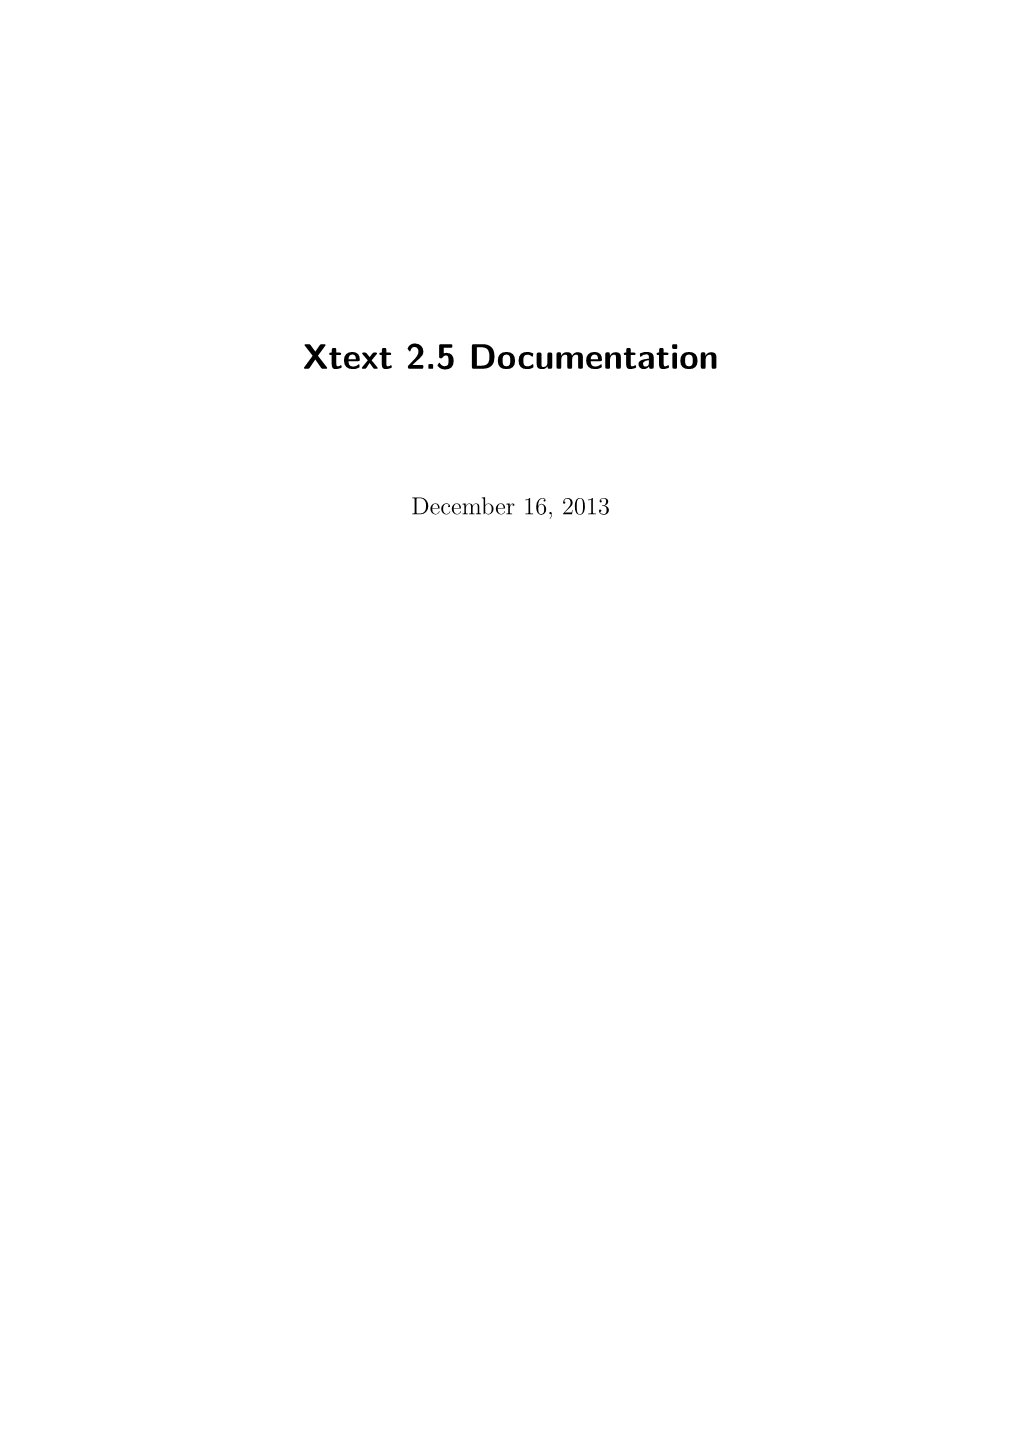 Xtext 2.5 Documentation